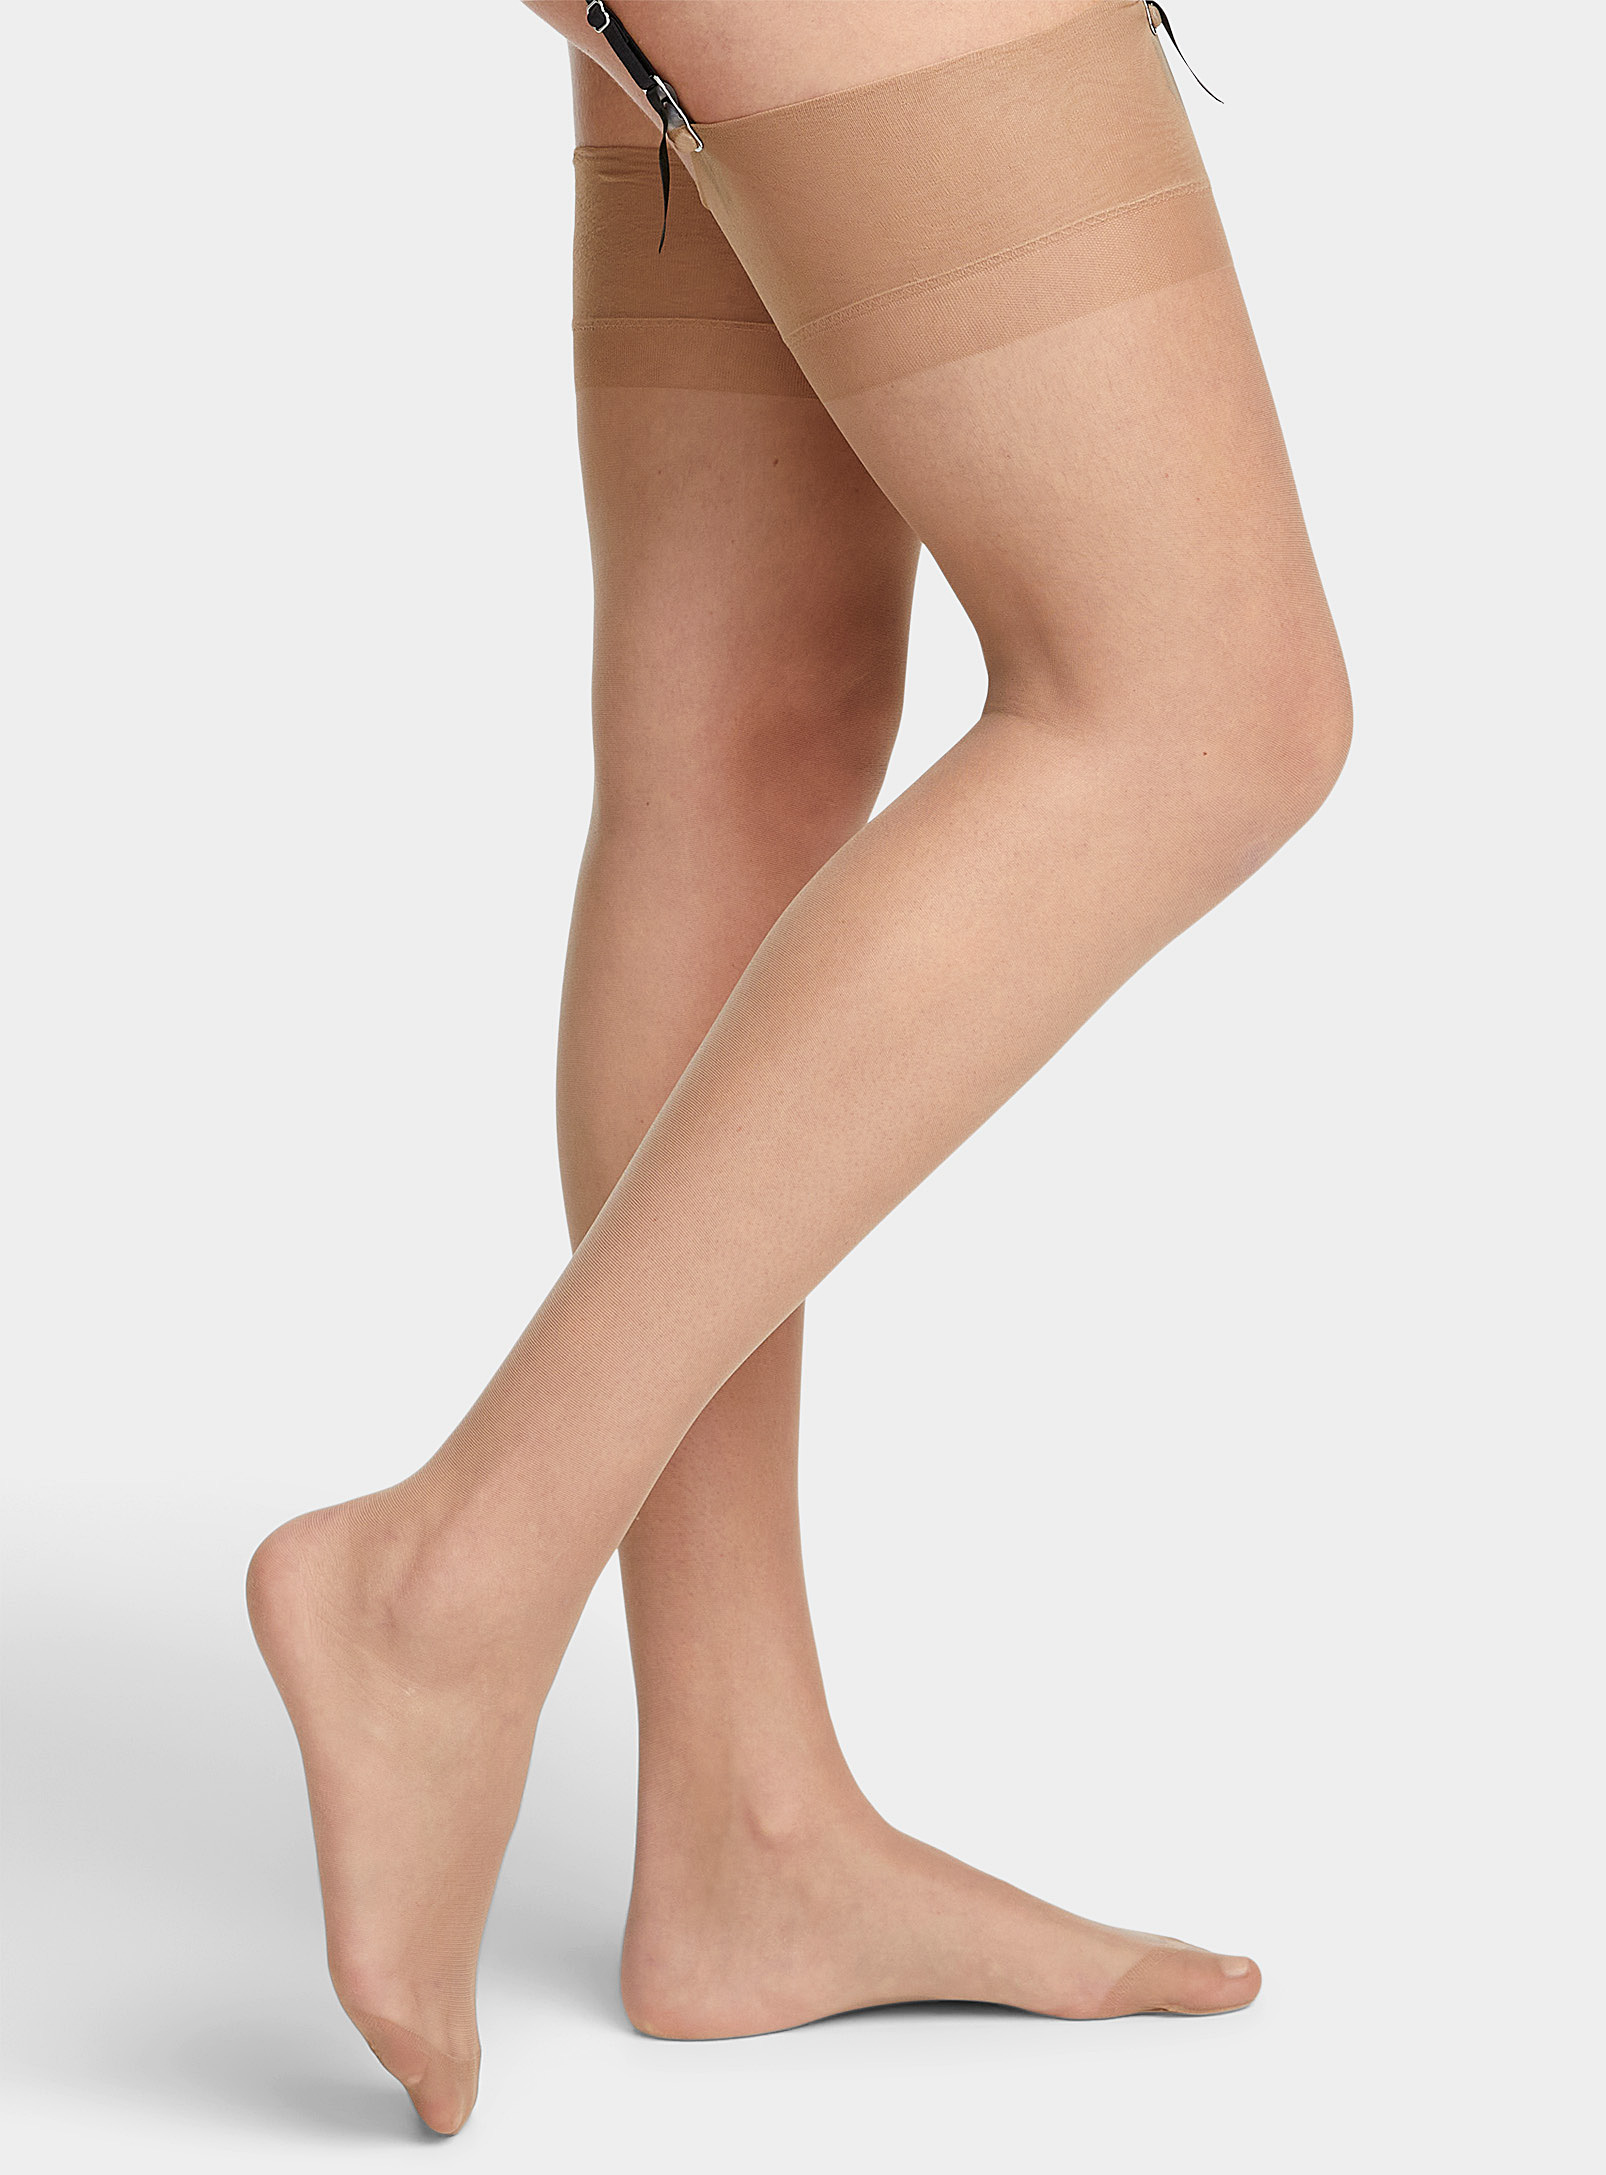 Bluebella - Women's Sheer garter thigh-highs